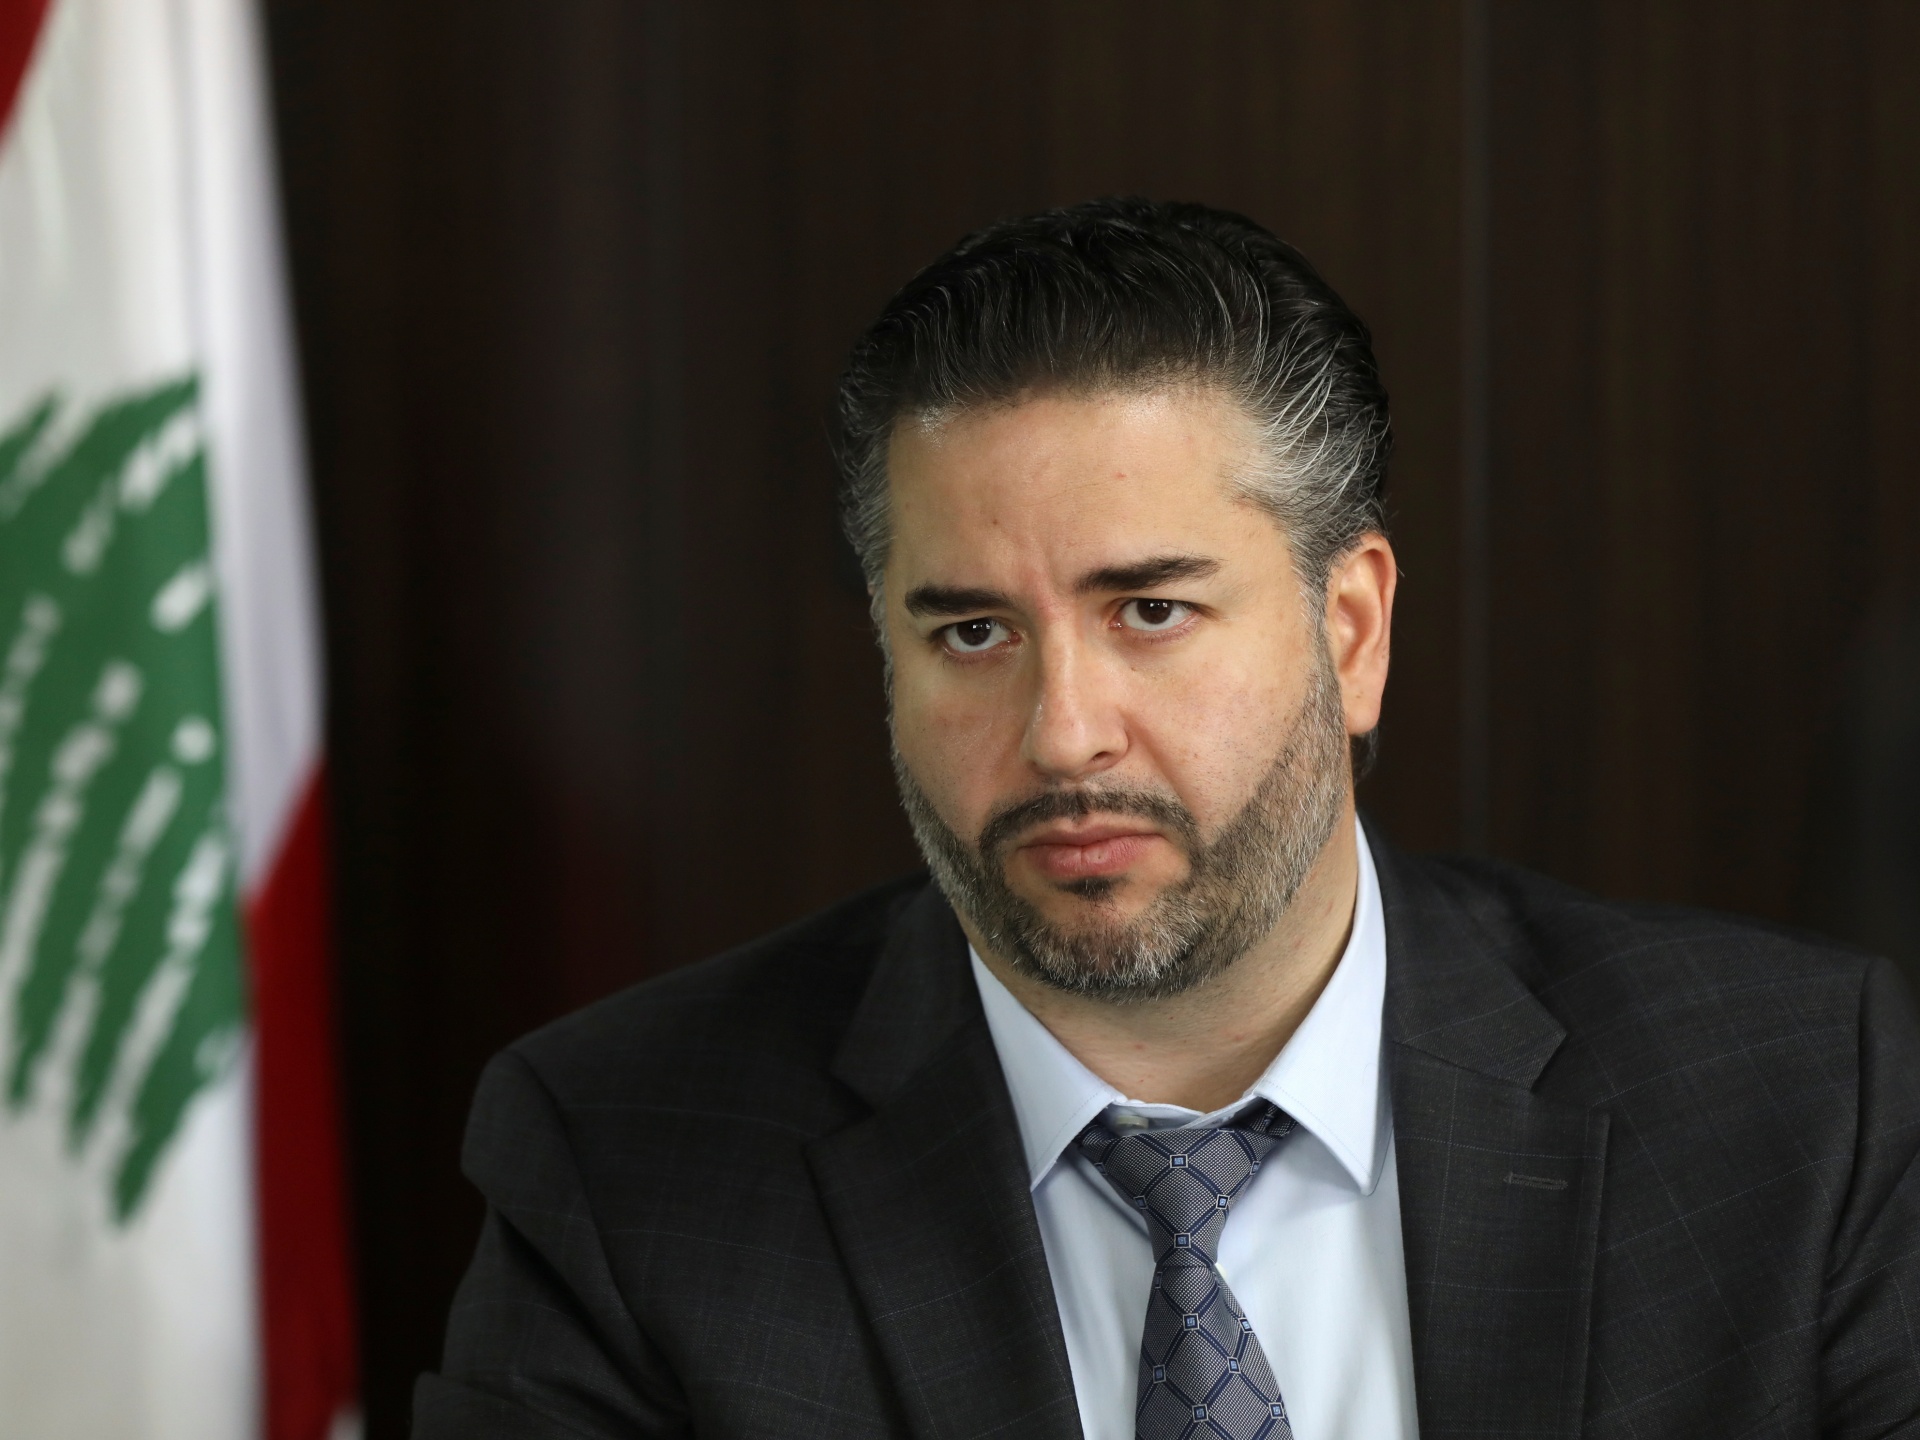 Minister Amin Salam addresses Lebanon’s economic crises